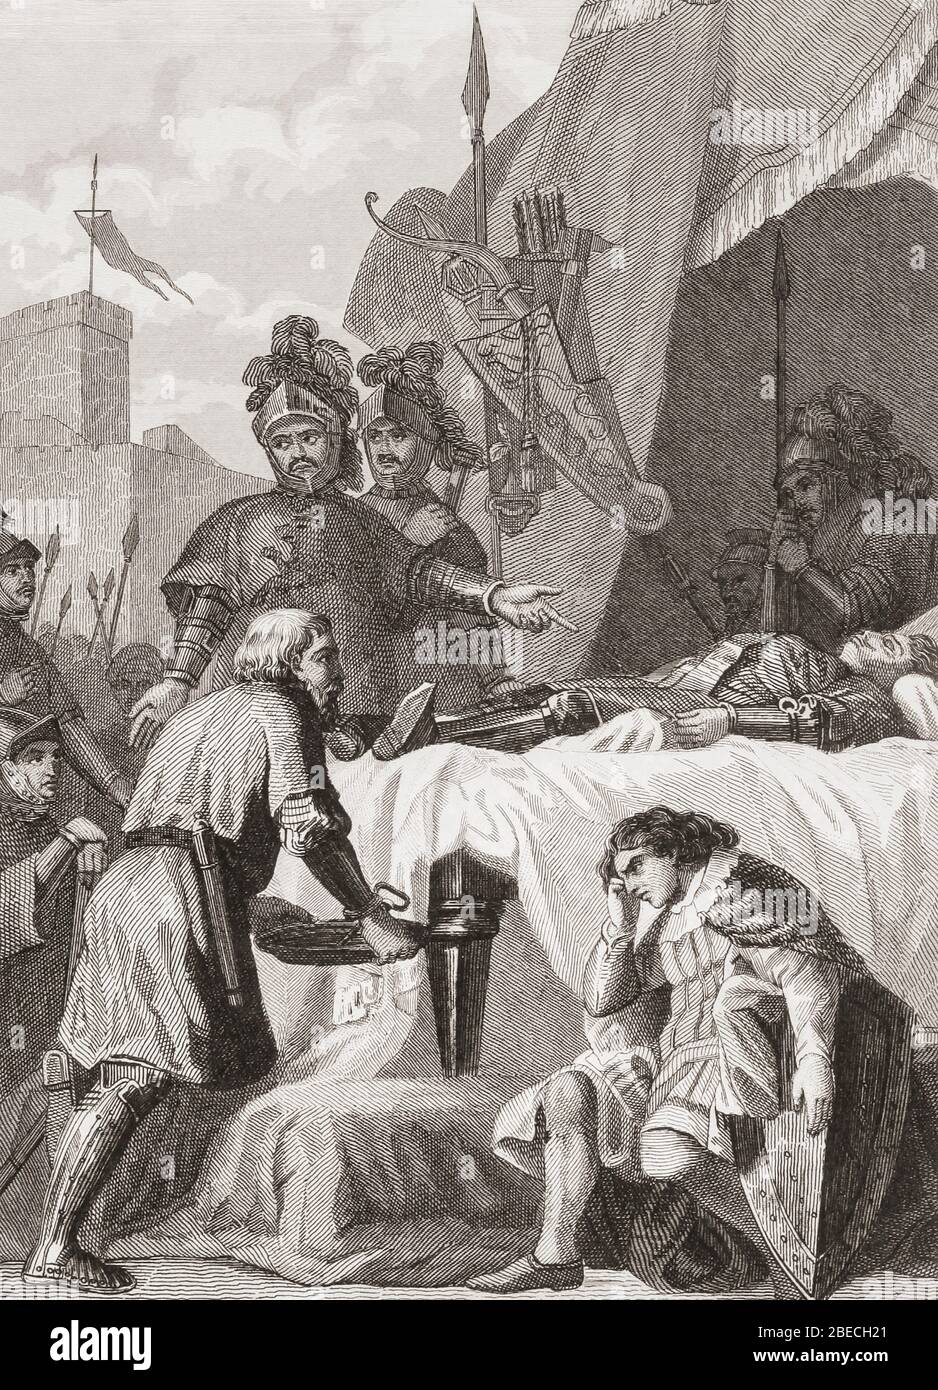 La morte di Rodrigo Díaz de Vivar, c. 1043 - 1099. Per i cristiani, era conosciuto come El Campeador, o il campione. I musulmani lo conoscevano come El Cid, il Signore. Da Las Glorias Nacionales, pubblicato a Madrid e Barcellona, 1852. Foto Stock